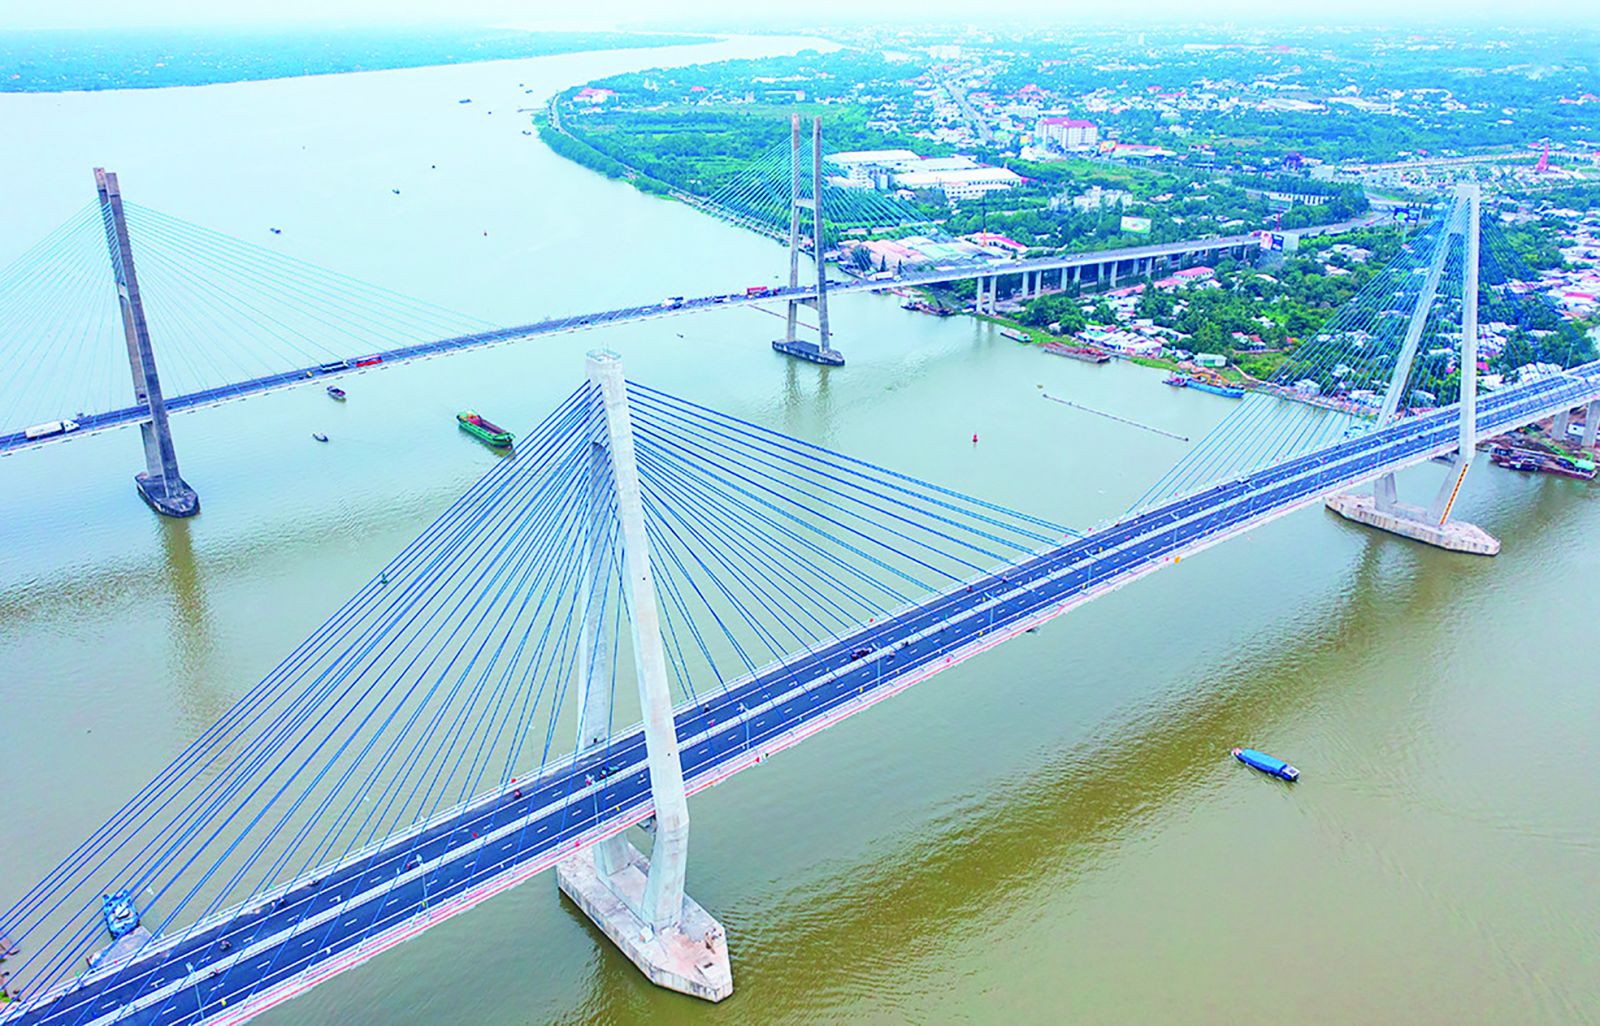 p/Cầu Mỹ Thuận 2 kết nối đồng bộ với cao tốc TP Hồ Chí Minh - Trung Lương - Mỹ Thuận và cao tốc Mỹ Thuận - Cần Thơ mở ra không gian phát triển mới cho Tiền Giang. 